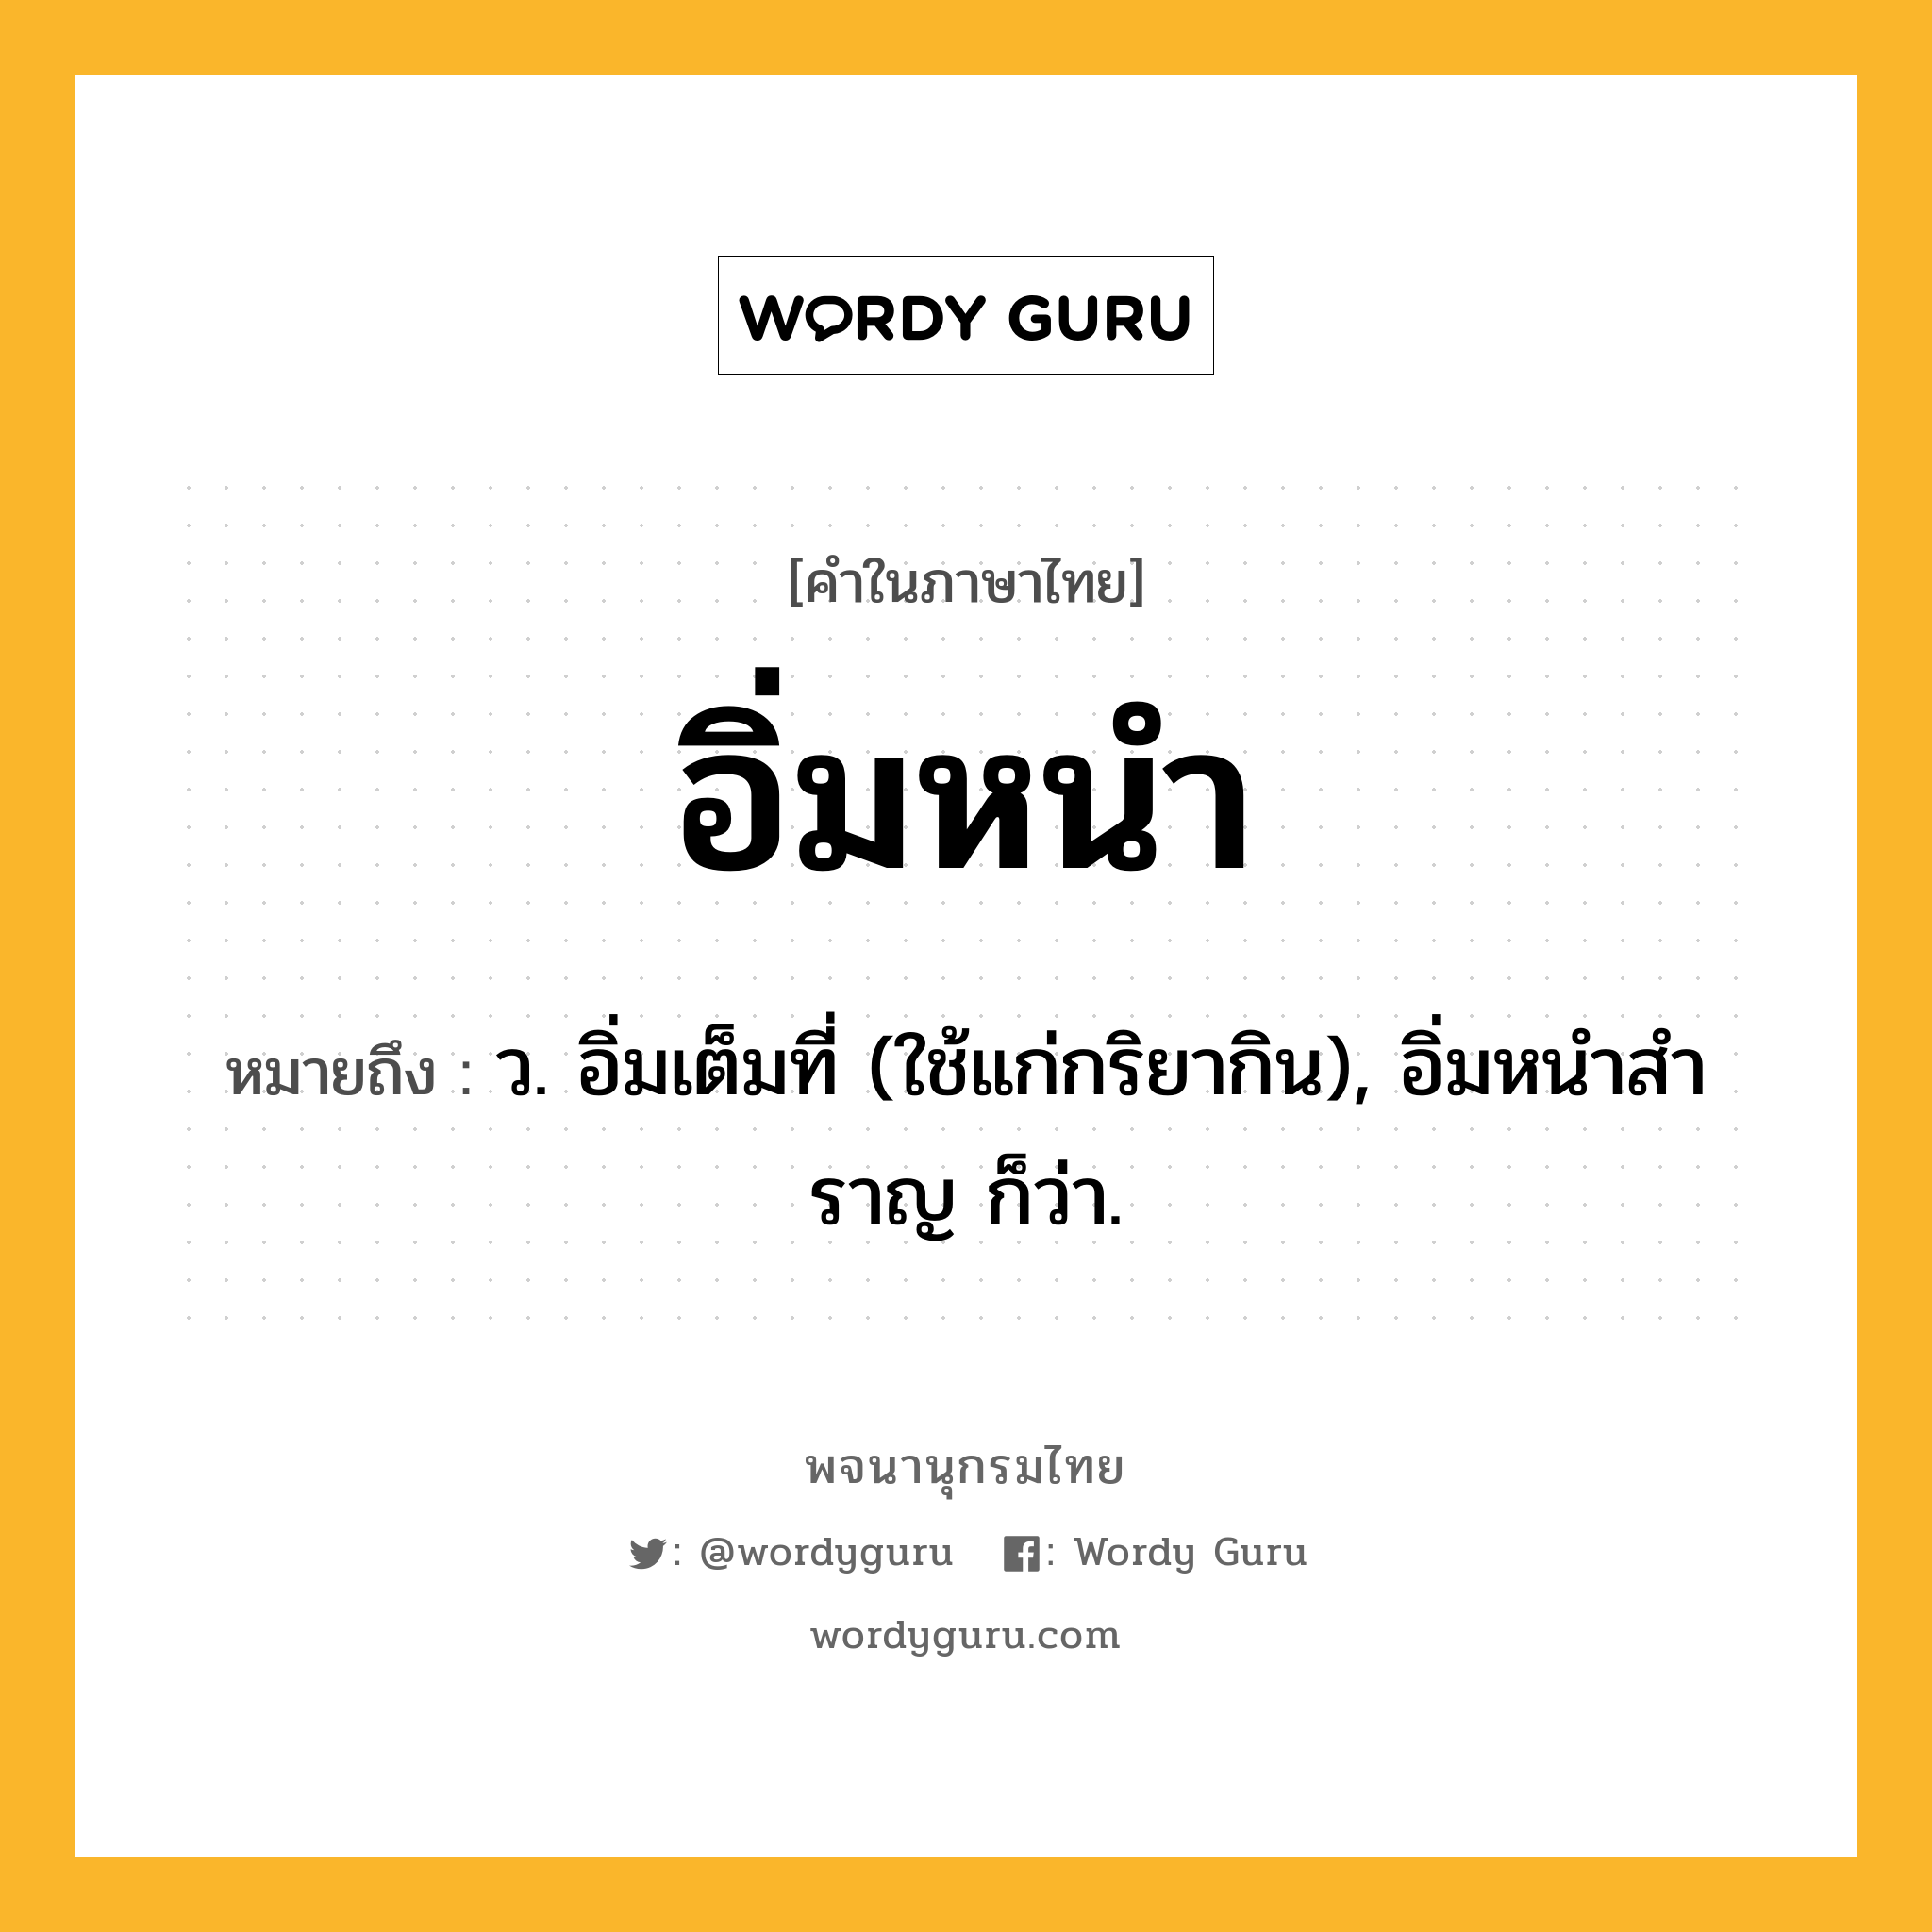 อิ่มหนำ ความหมาย หมายถึงอะไร?, คำในภาษาไทย อิ่มหนำ หมายถึง ว. อิ่มเต็มที่ (ใช้แก่กริยากิน), อิ่มหนําสําราญ ก็ว่า.